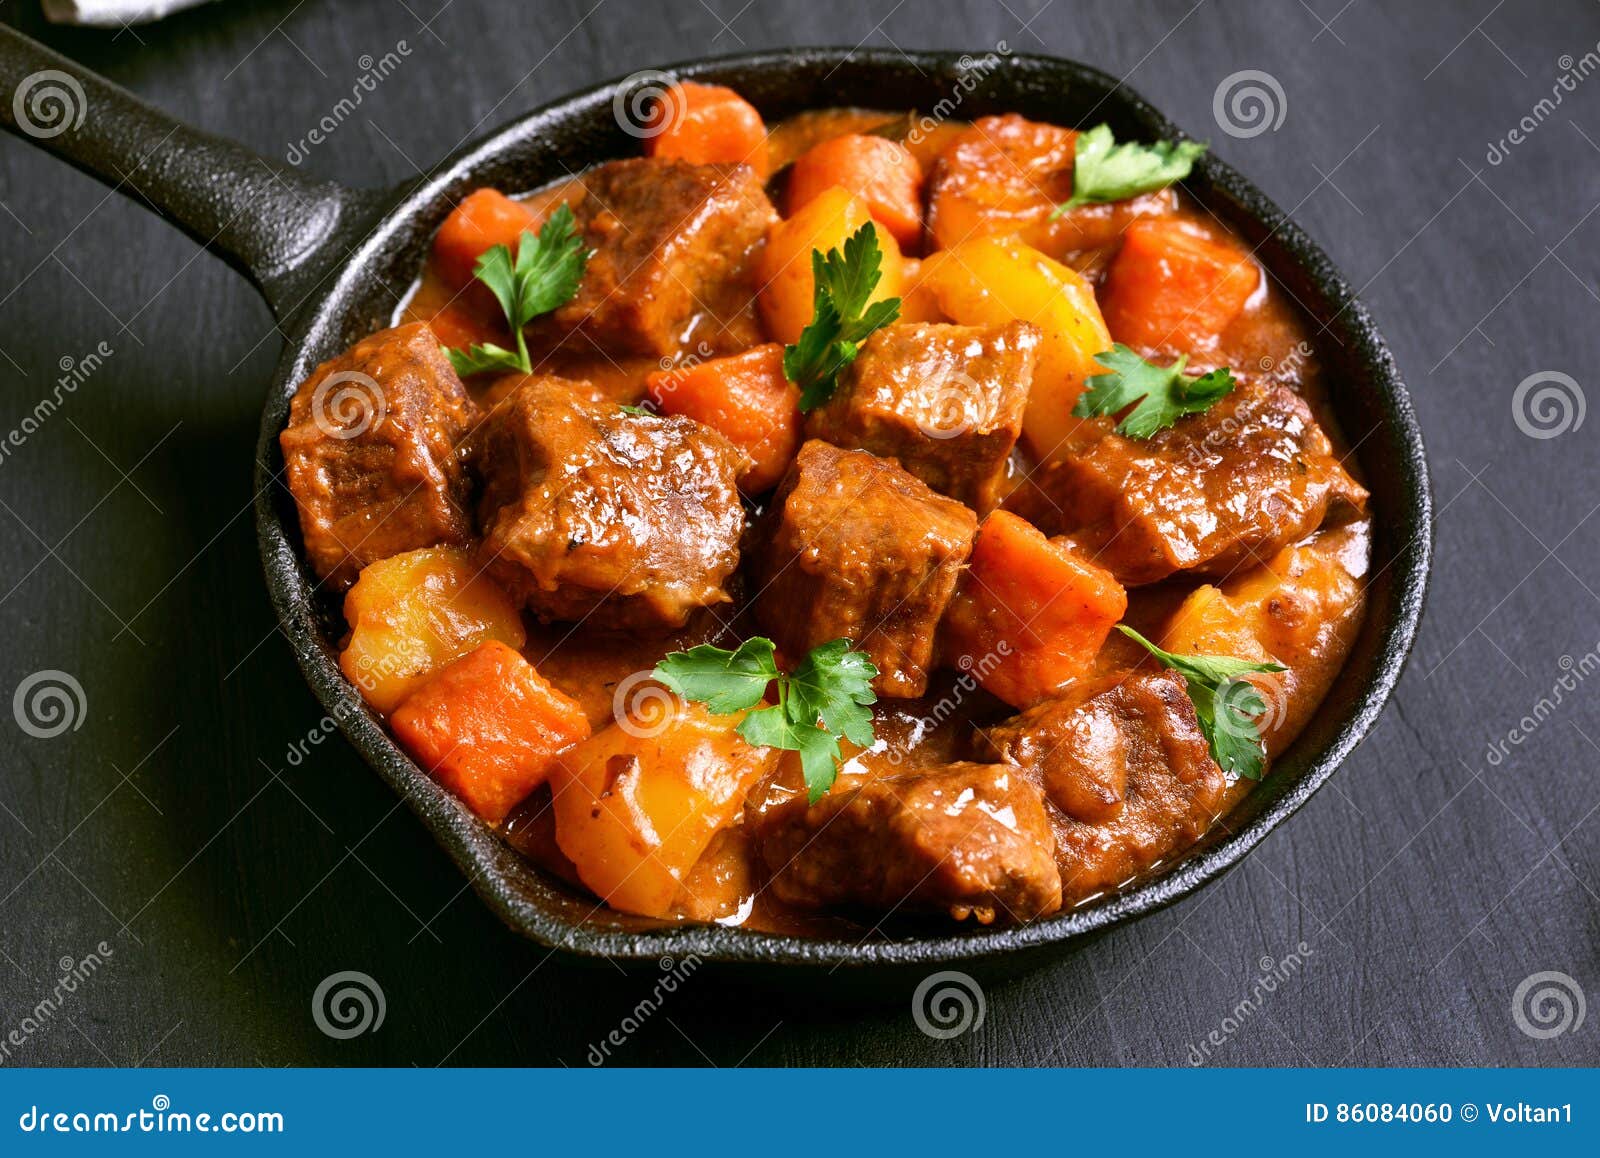 beef stew in frying pan